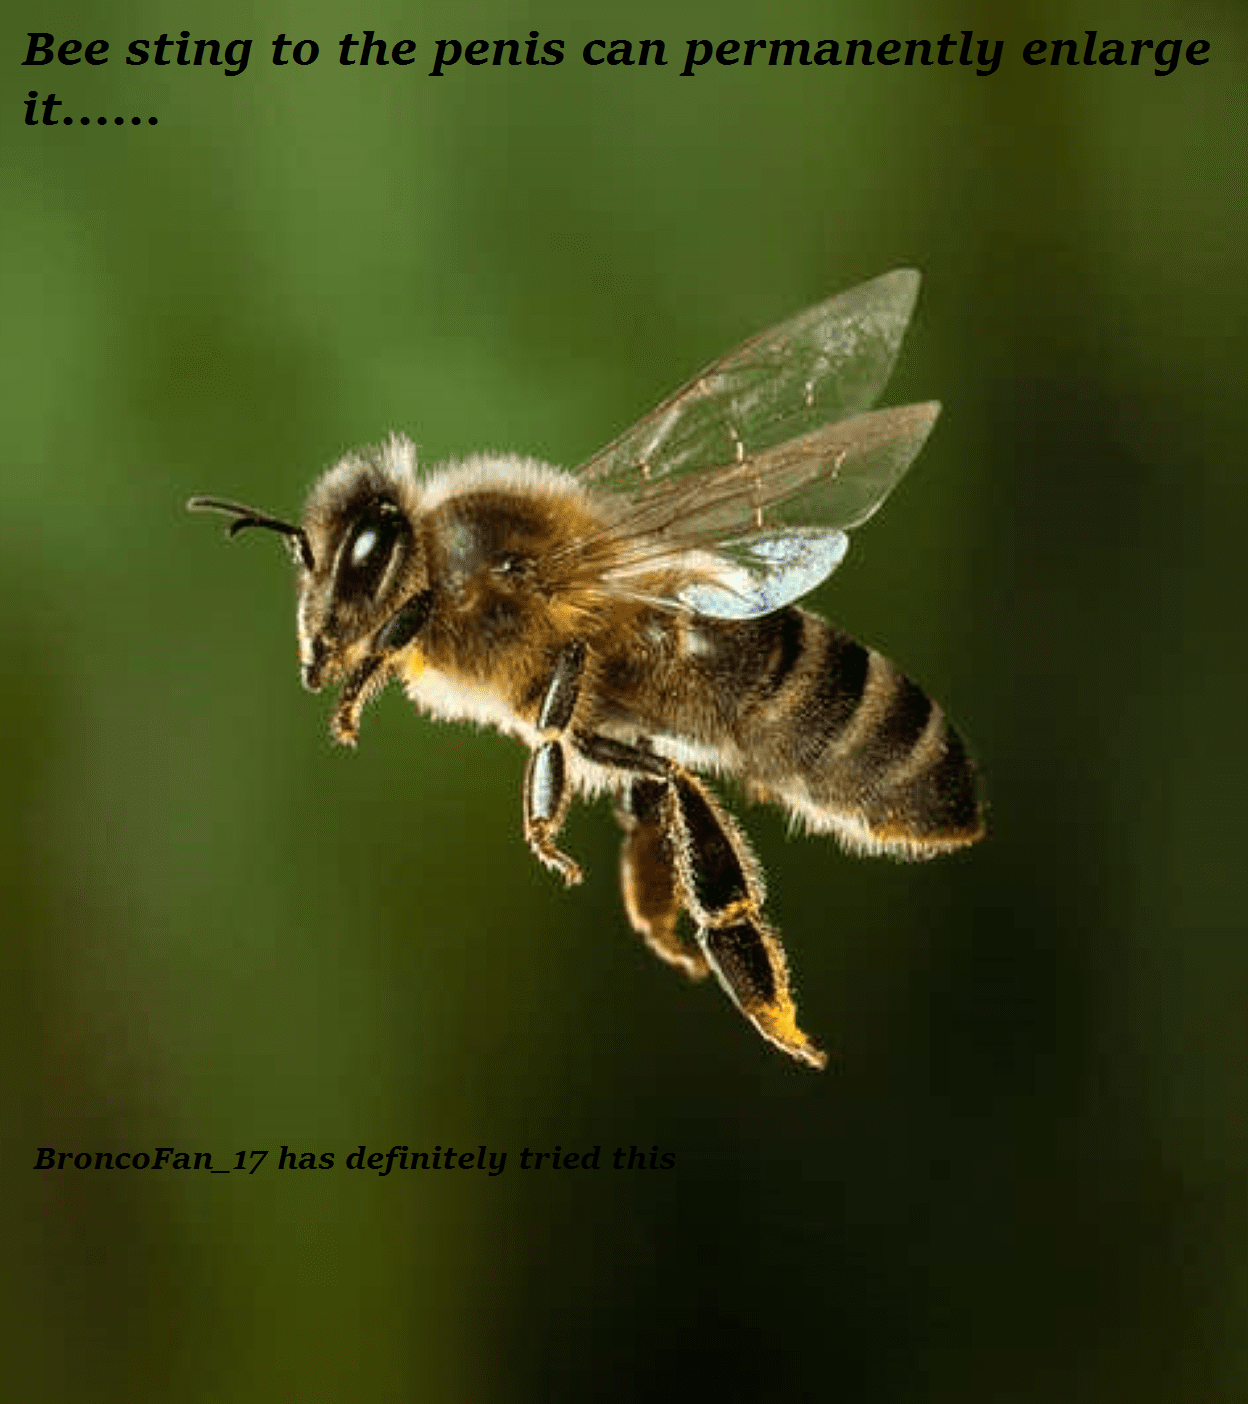 bee sting to the penis - Bee sting to the penis can permanently enlarge BroncoFan 17 has definitely tried this